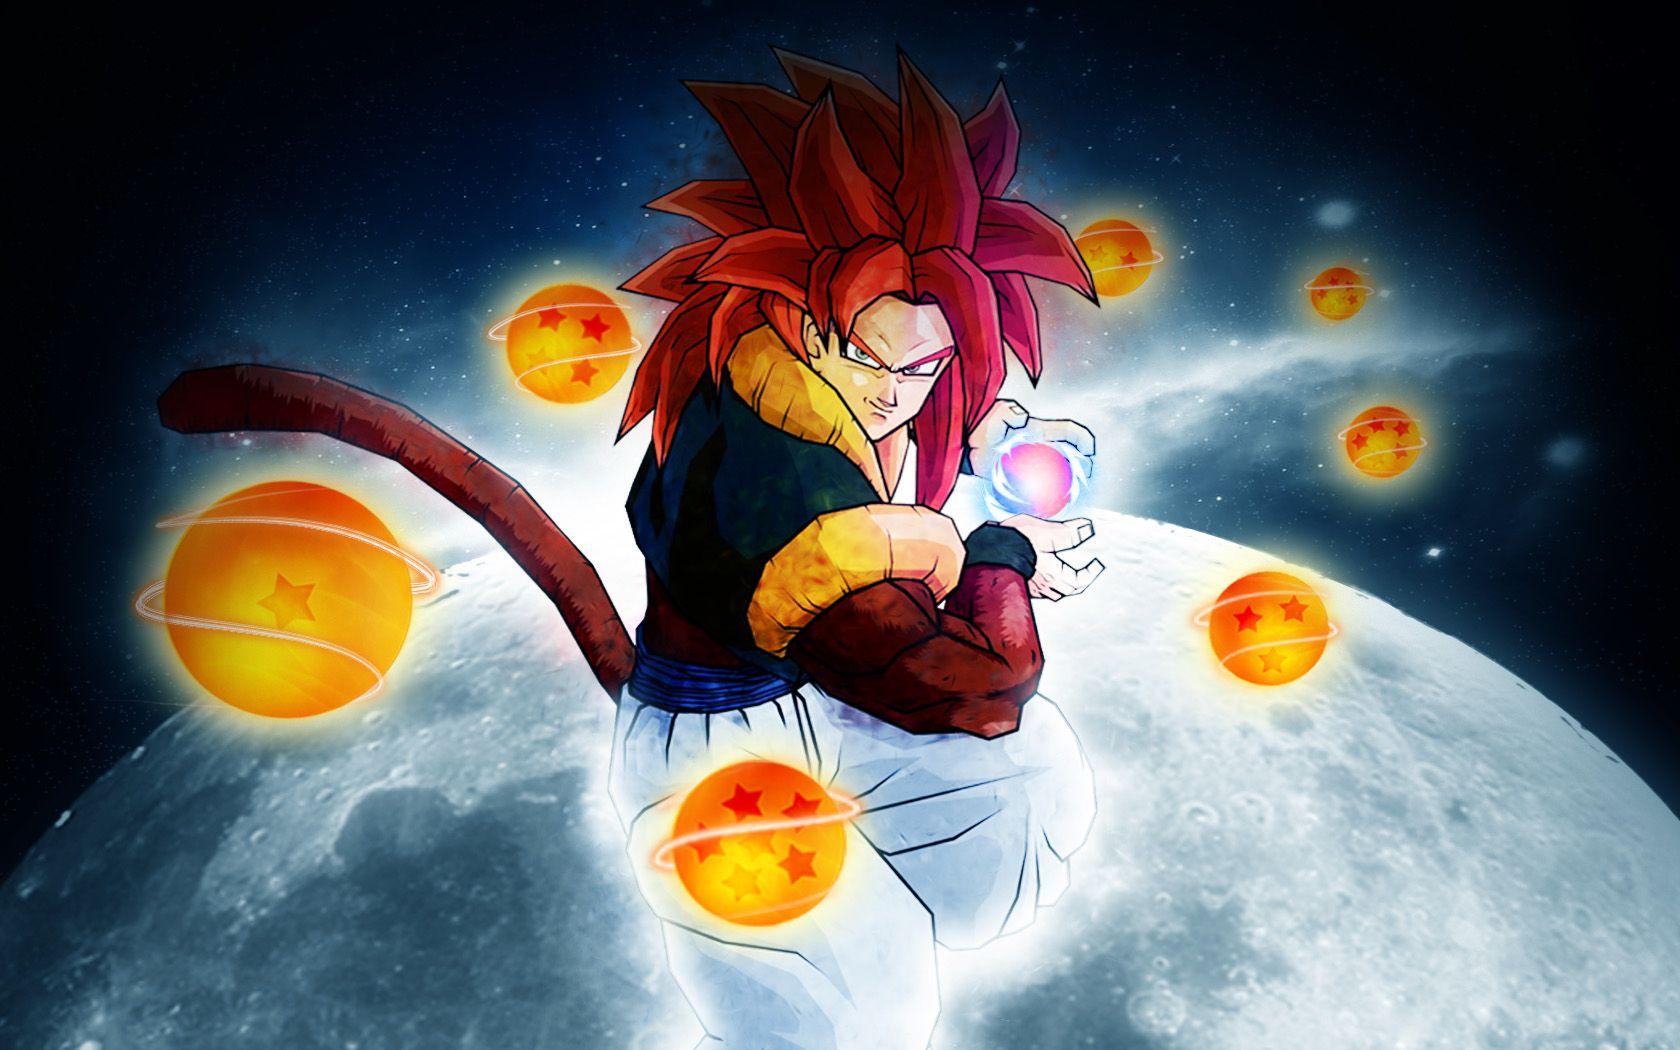 Dragon Ball Z Gogeta Super Saiyan 4 HD Wallpaper. Anime